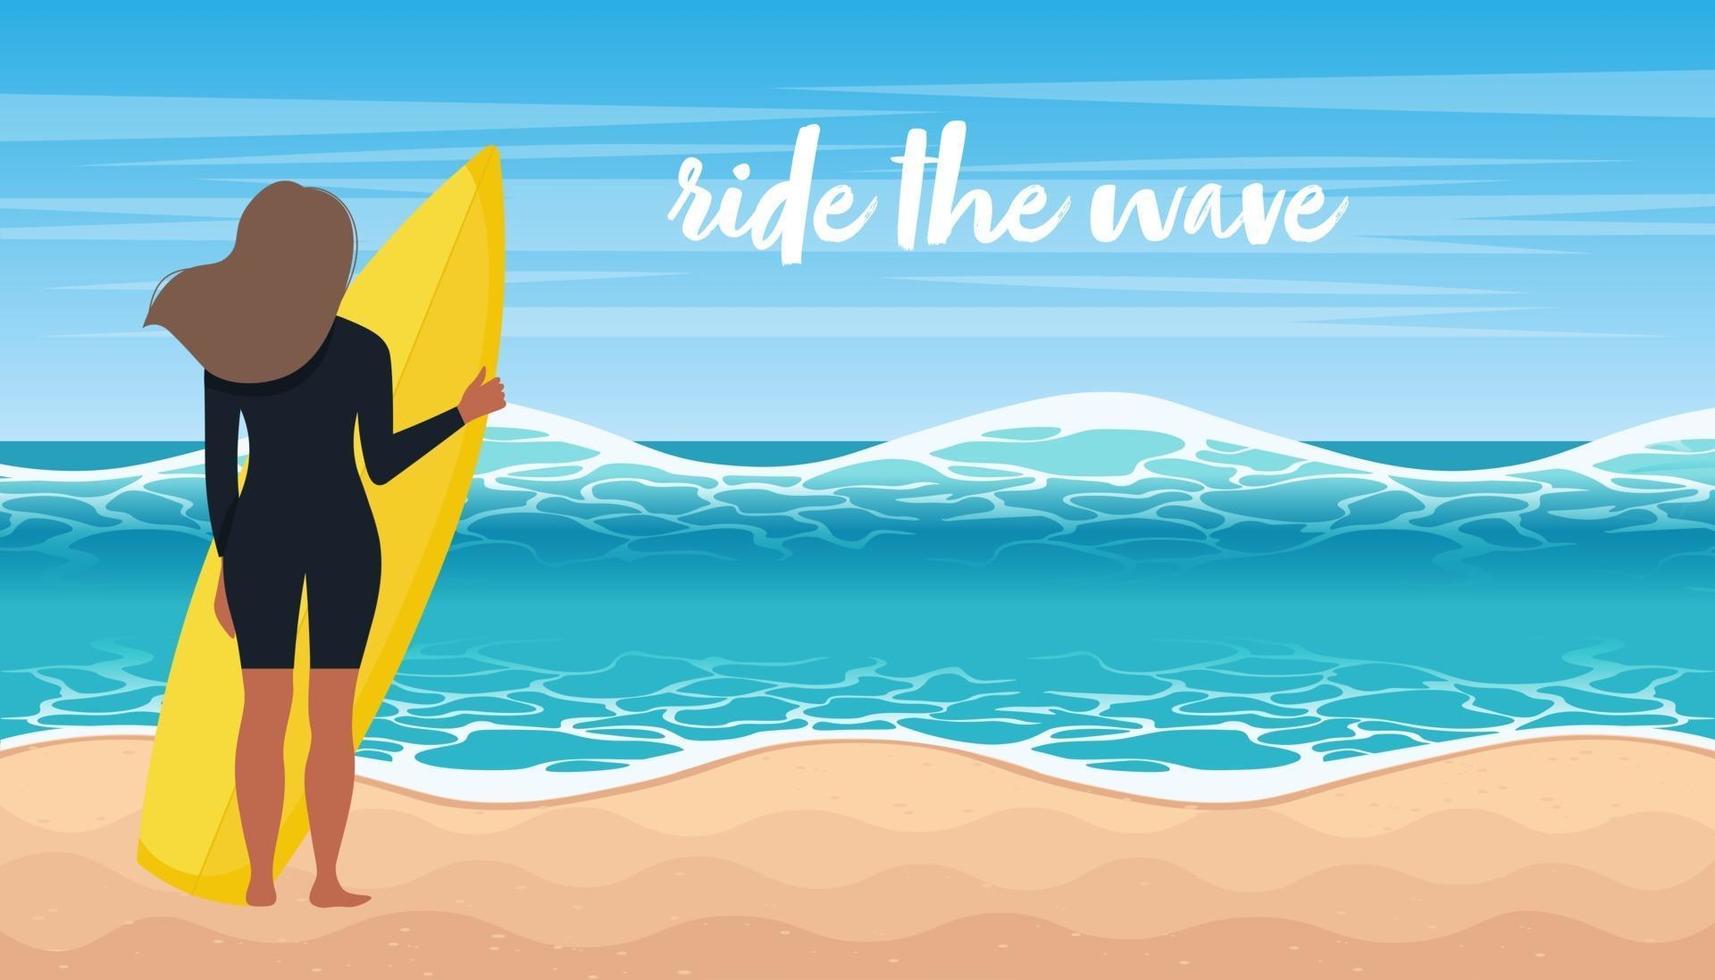 mulher em fato de surf surfar as ondas. atividade esportiva com pranchas de surf no mar ou oceano. ilustração em vetor plana dos desenhos animados.